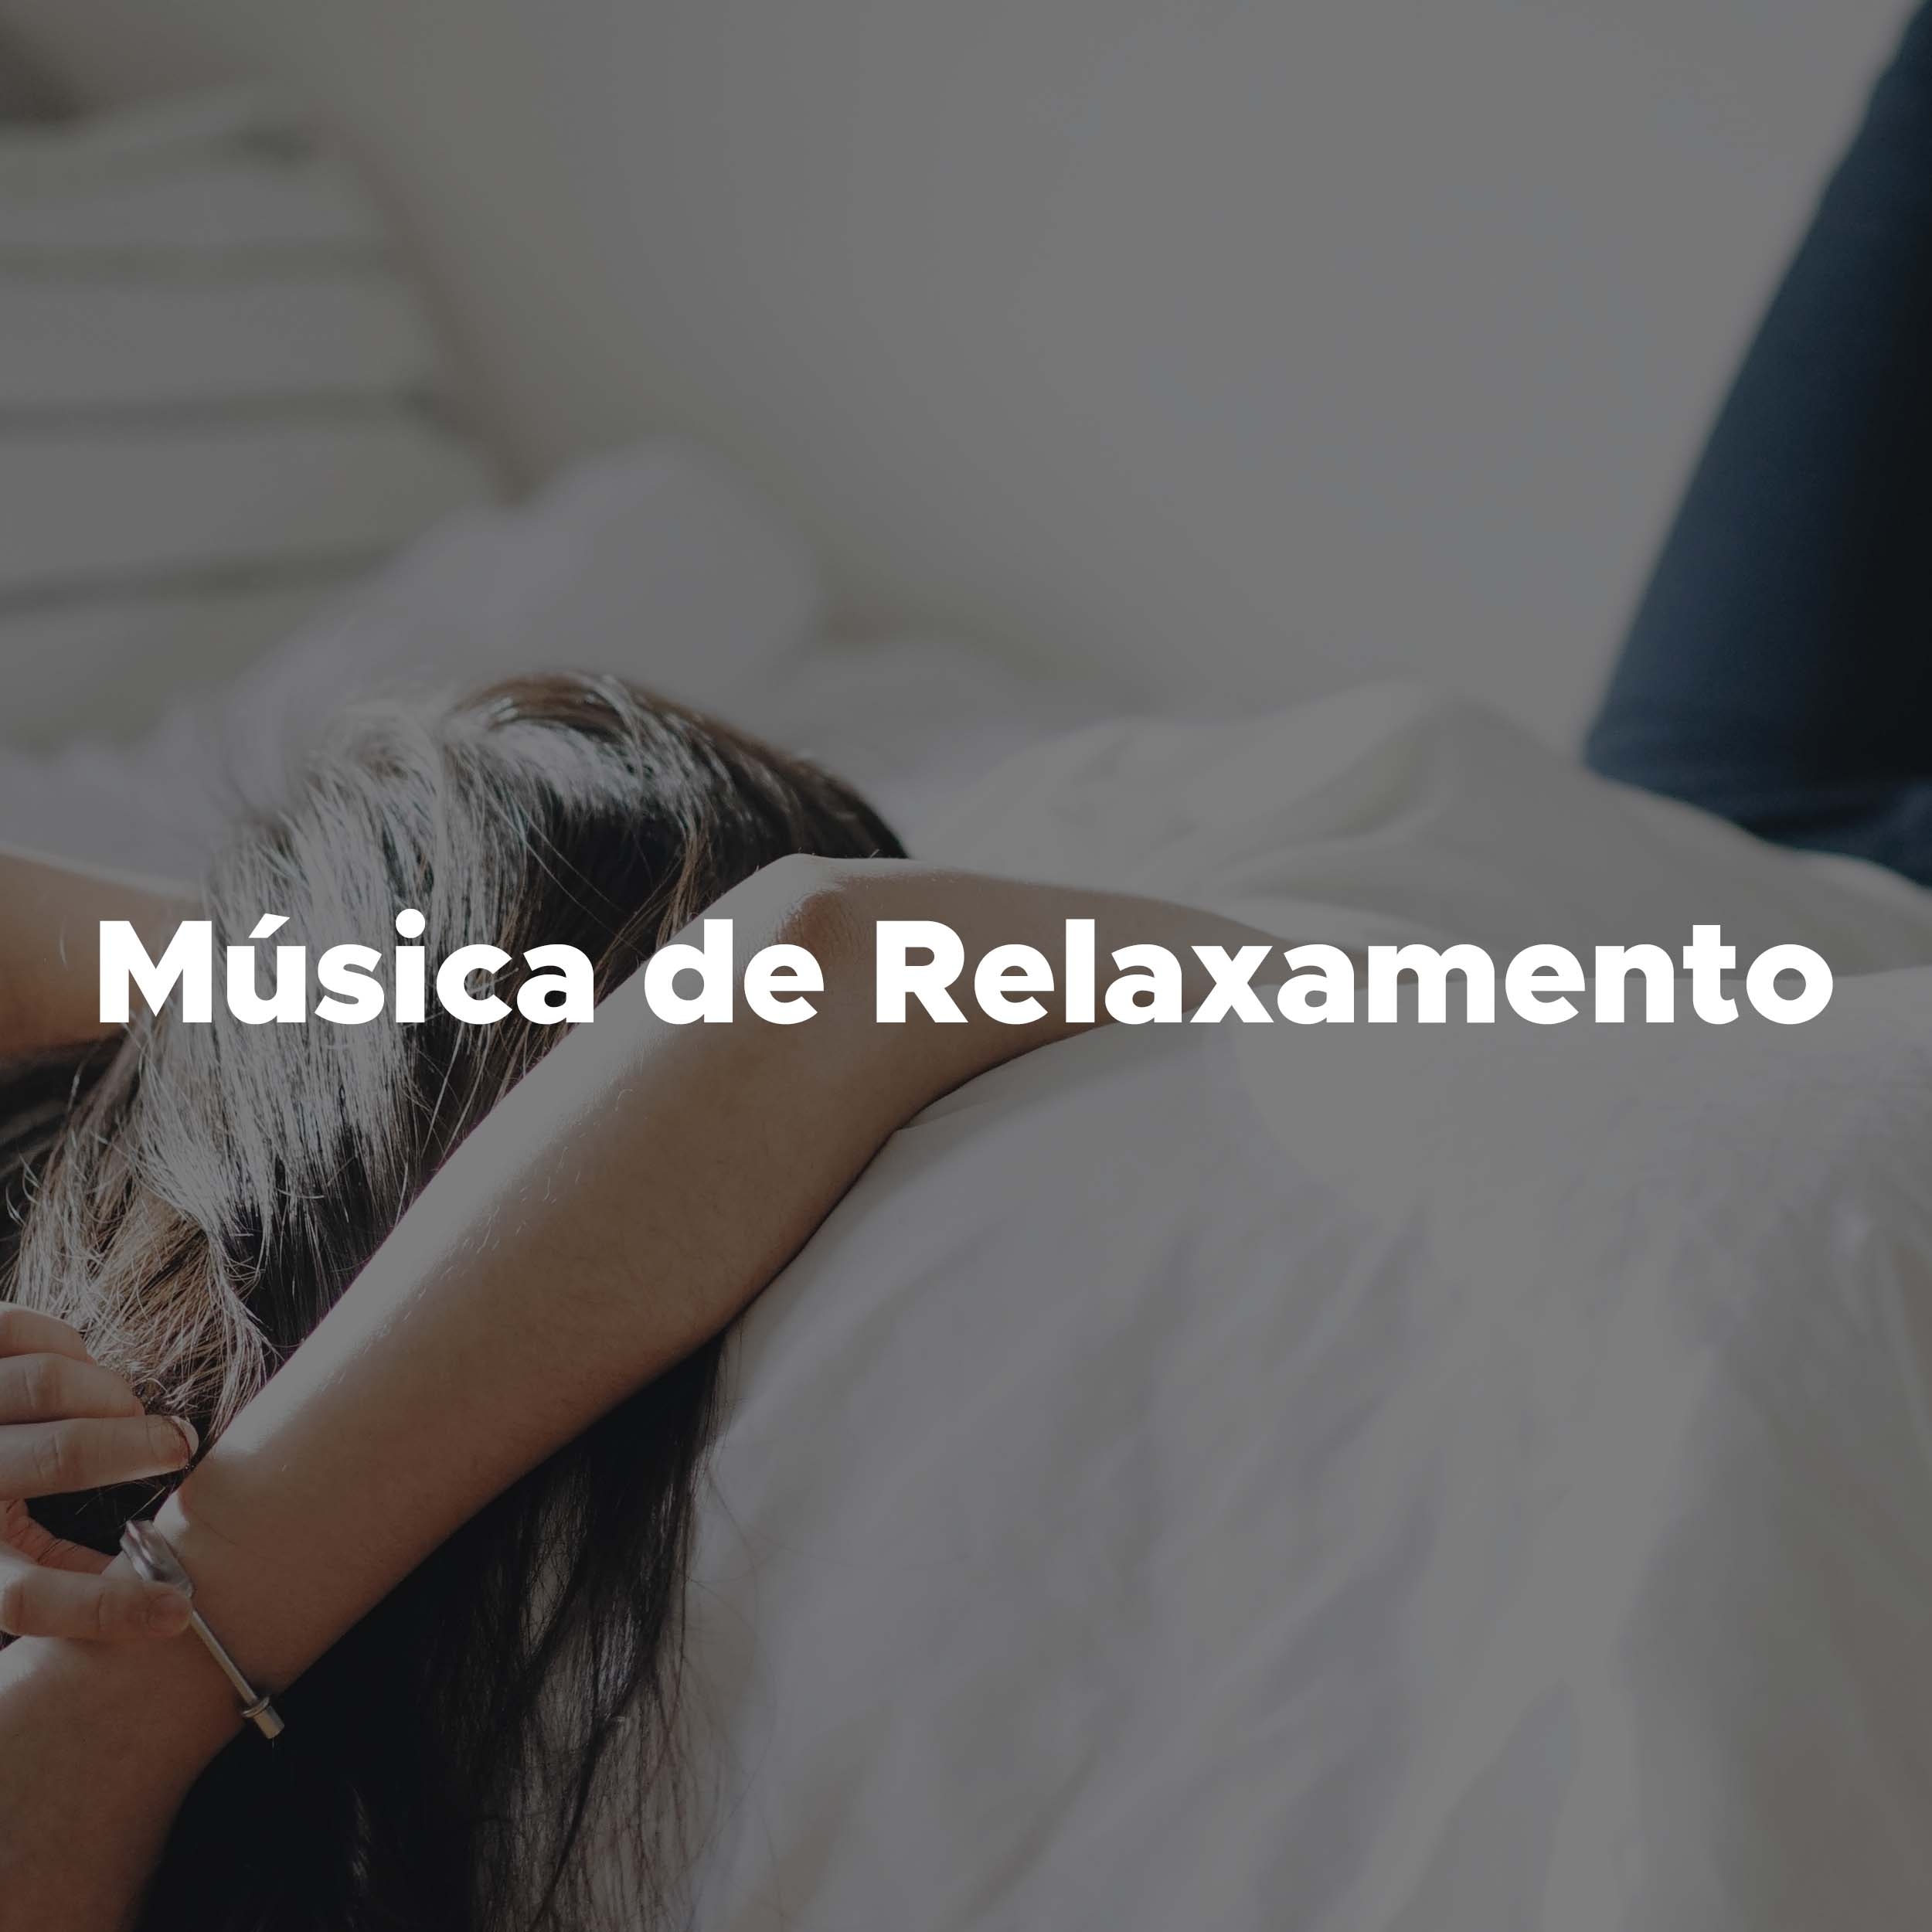 Musica de Relaxamento - as Melhores Musicas para Relaxar de Todo o Tempo